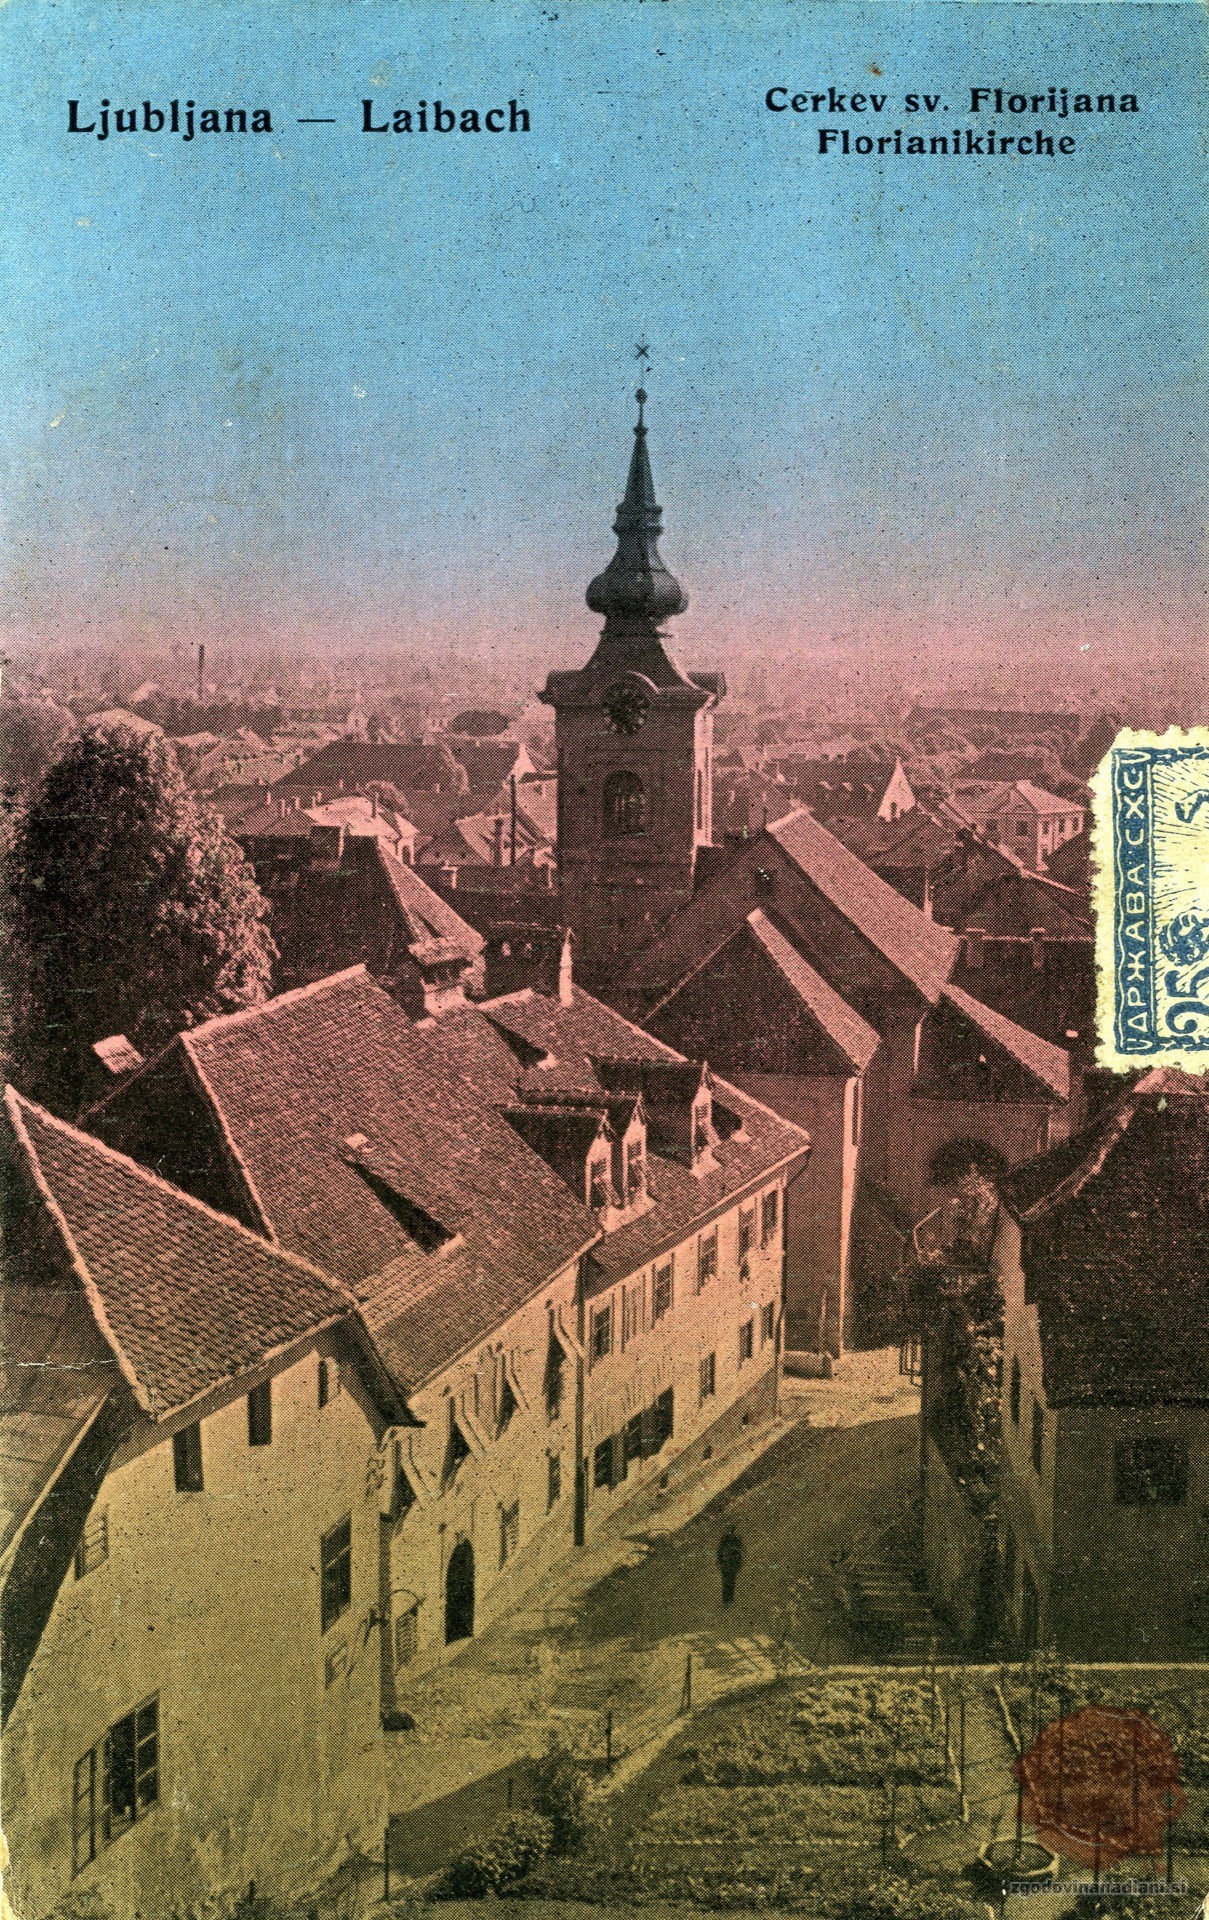 Cerkev_sv_Florjana_Ljubljana_1920